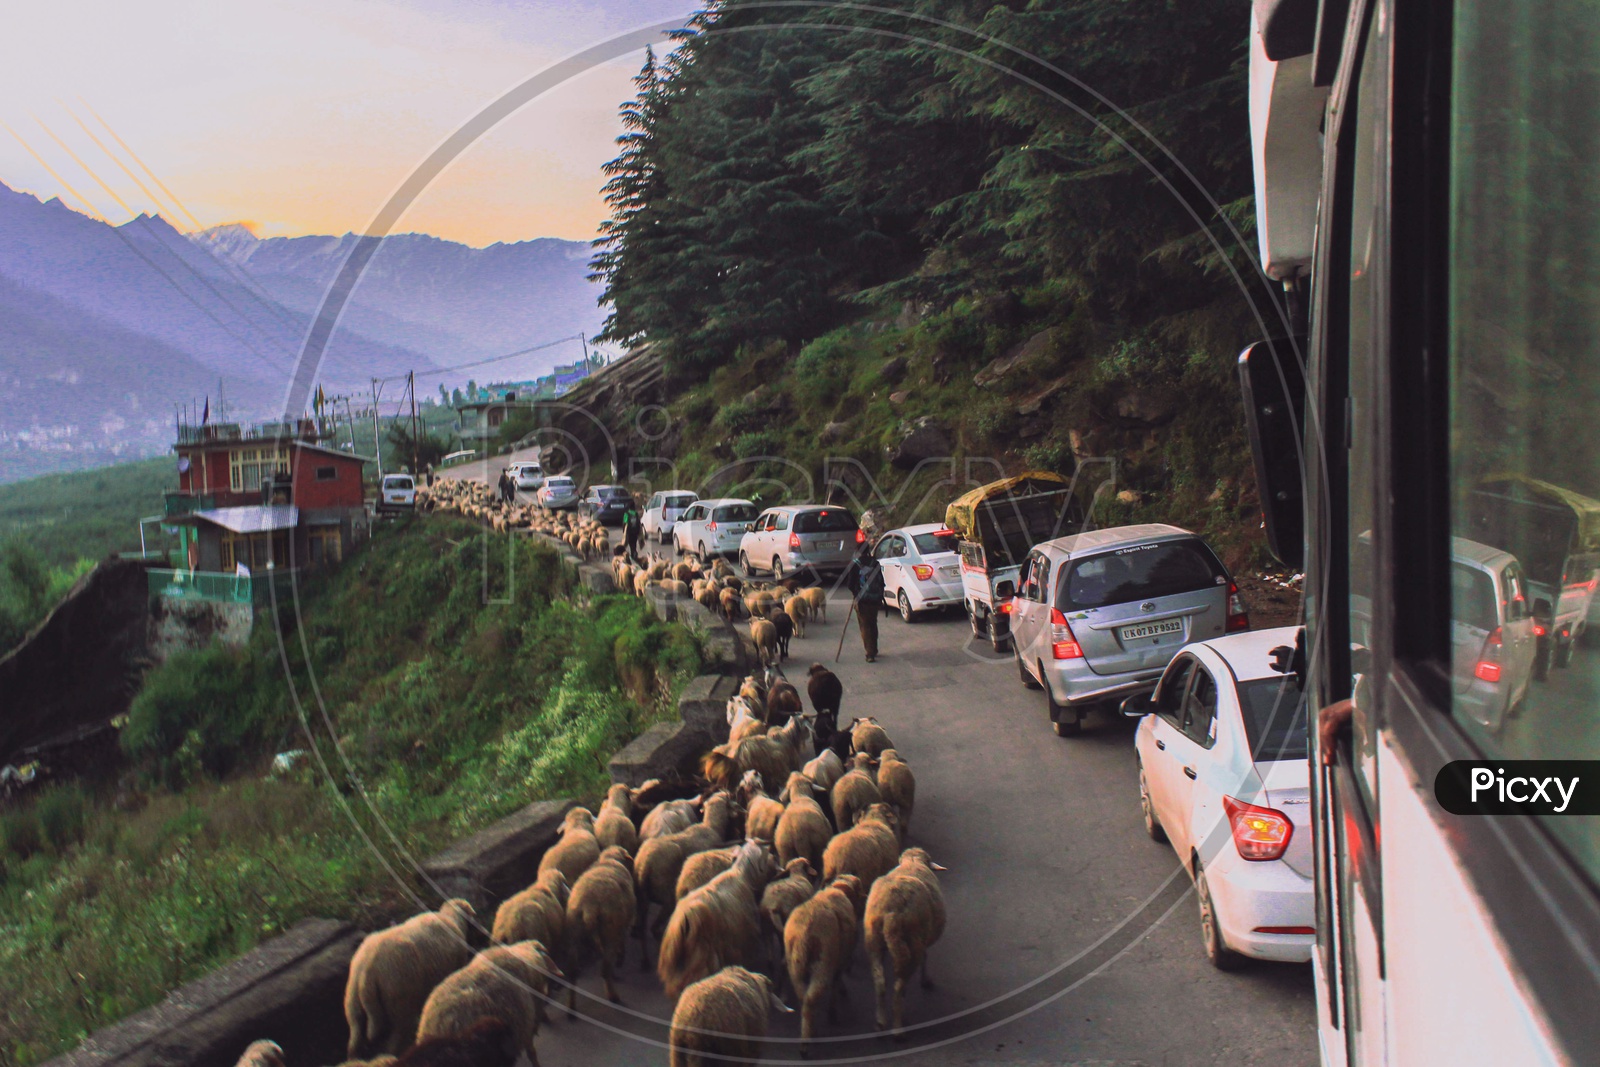 Sheeps' traffic